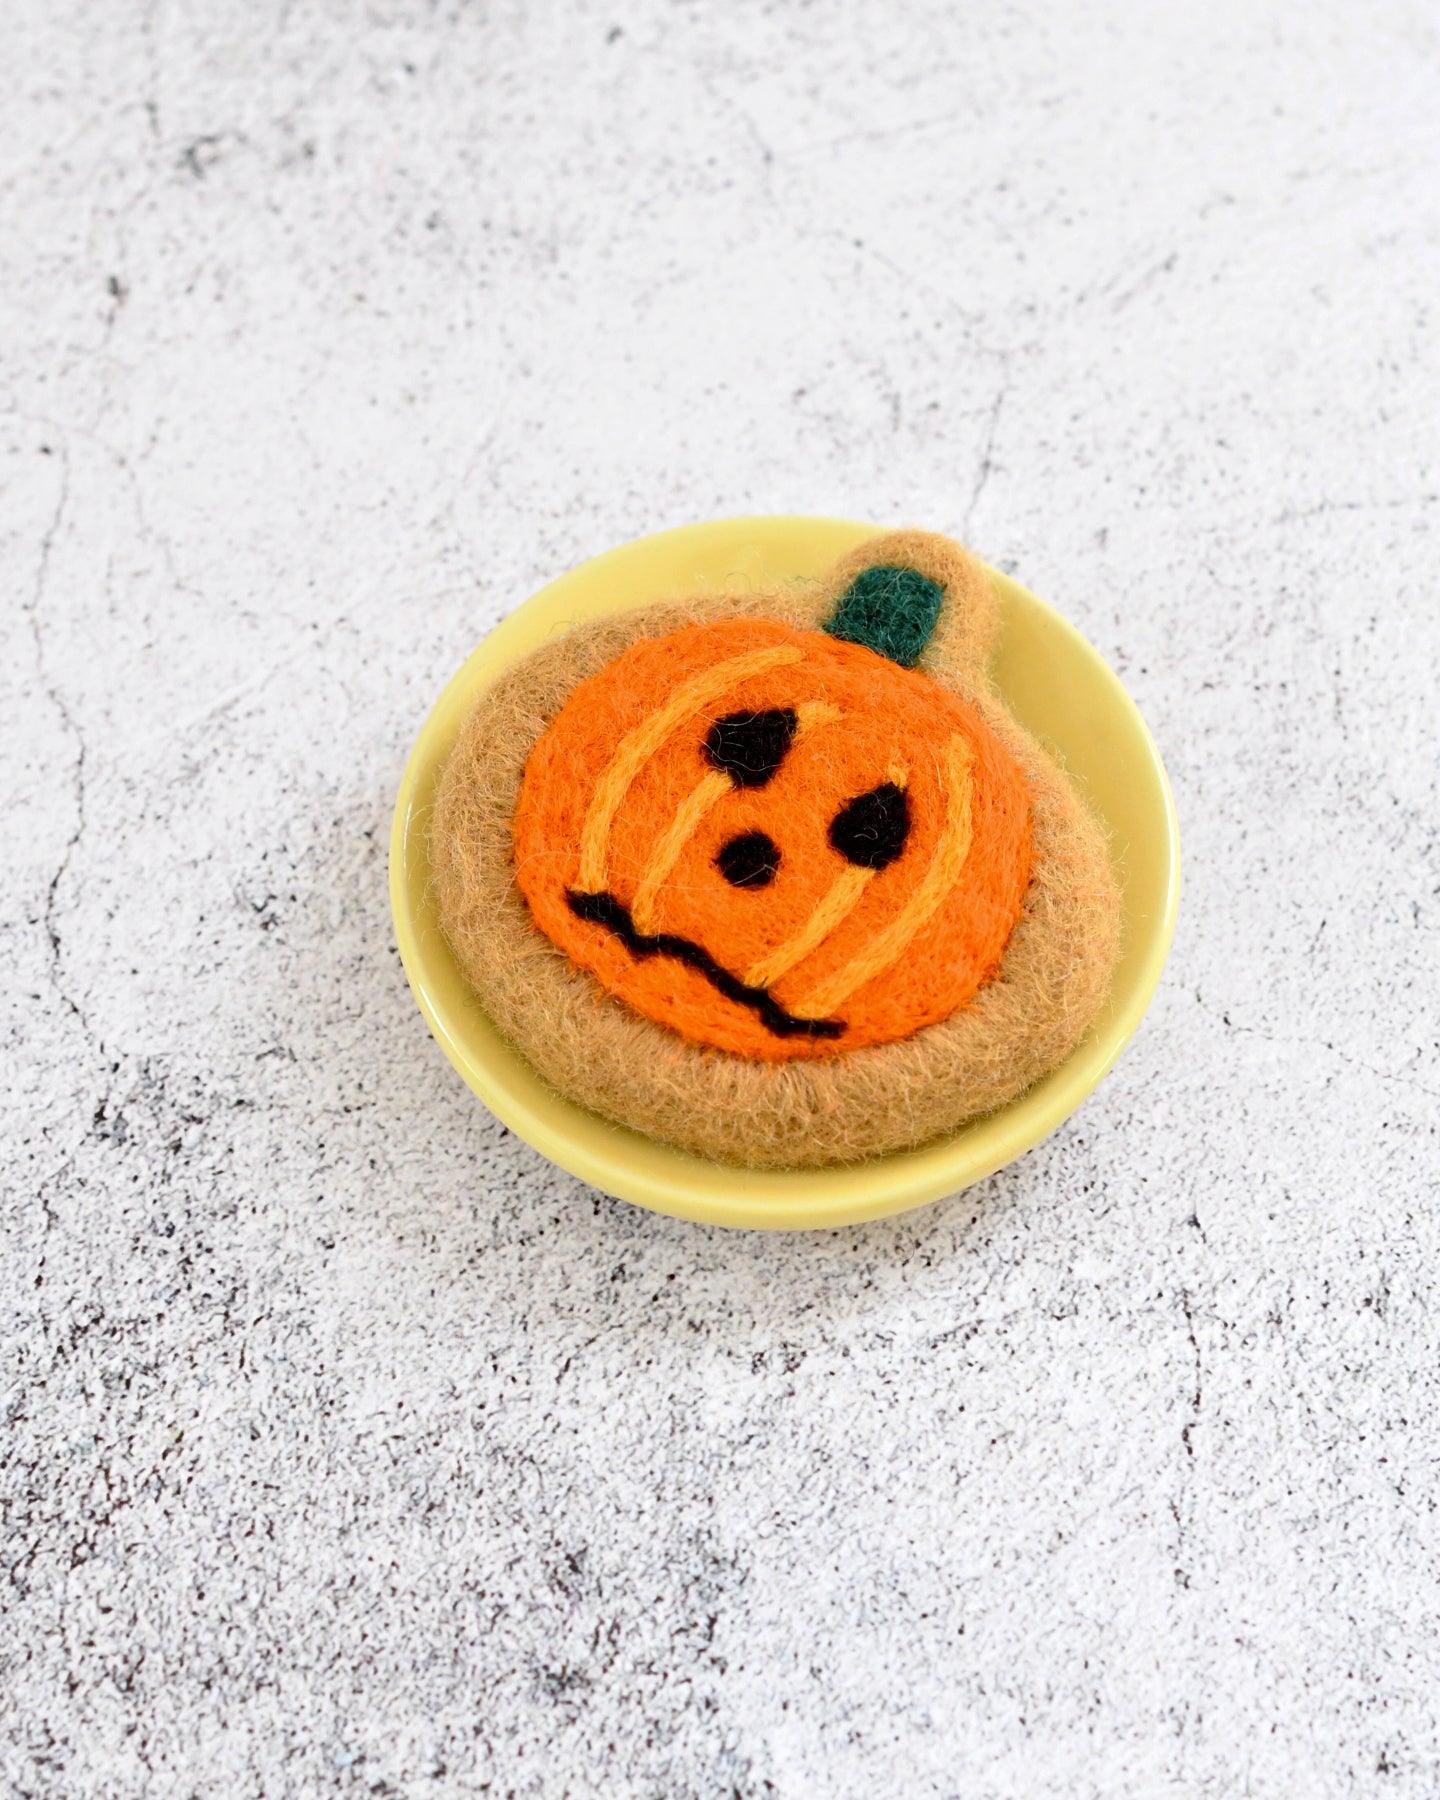 Felt Frazzled Pumpkin Cookie - Tara Treasures